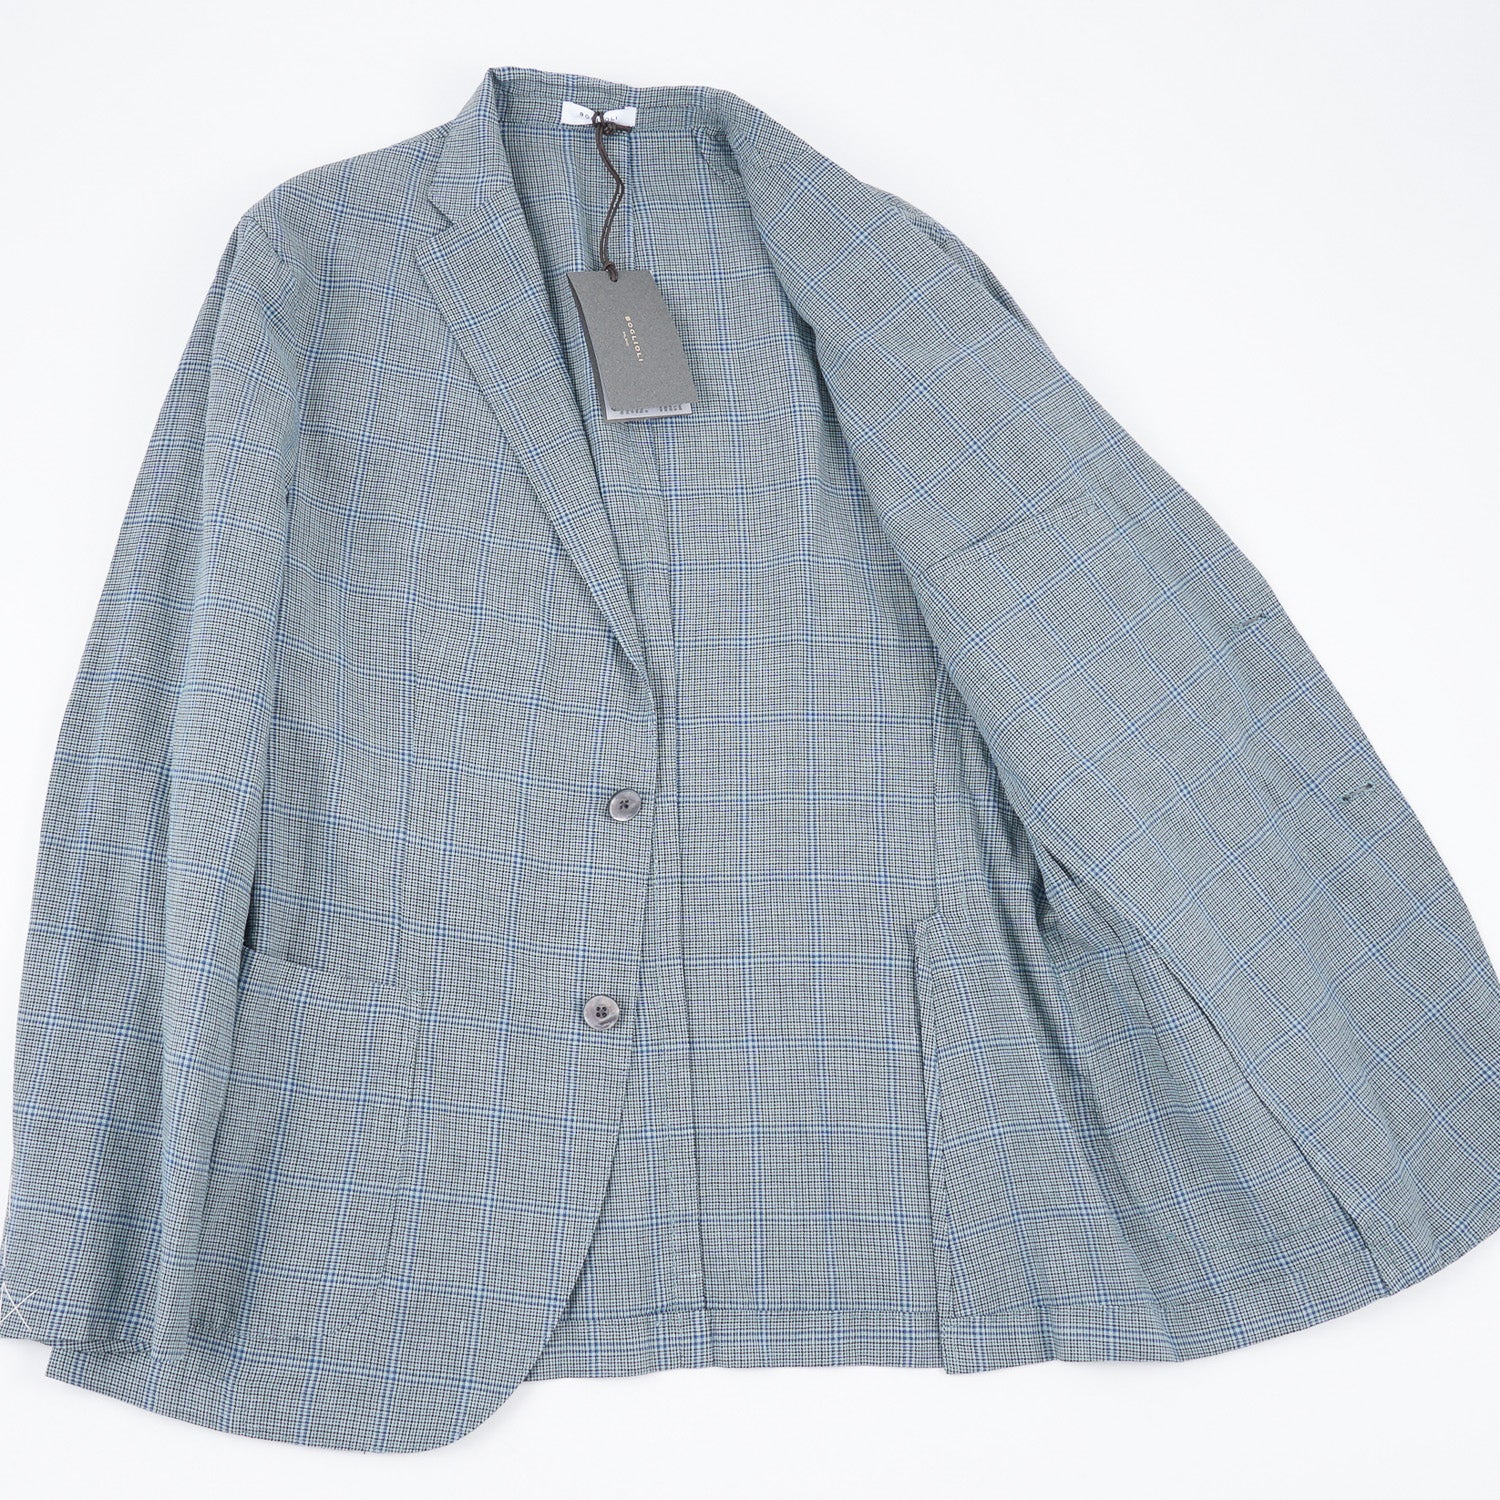 Boglioli Lightweight Wool-Linen 'K Jacket' - Top Shelf Apparel